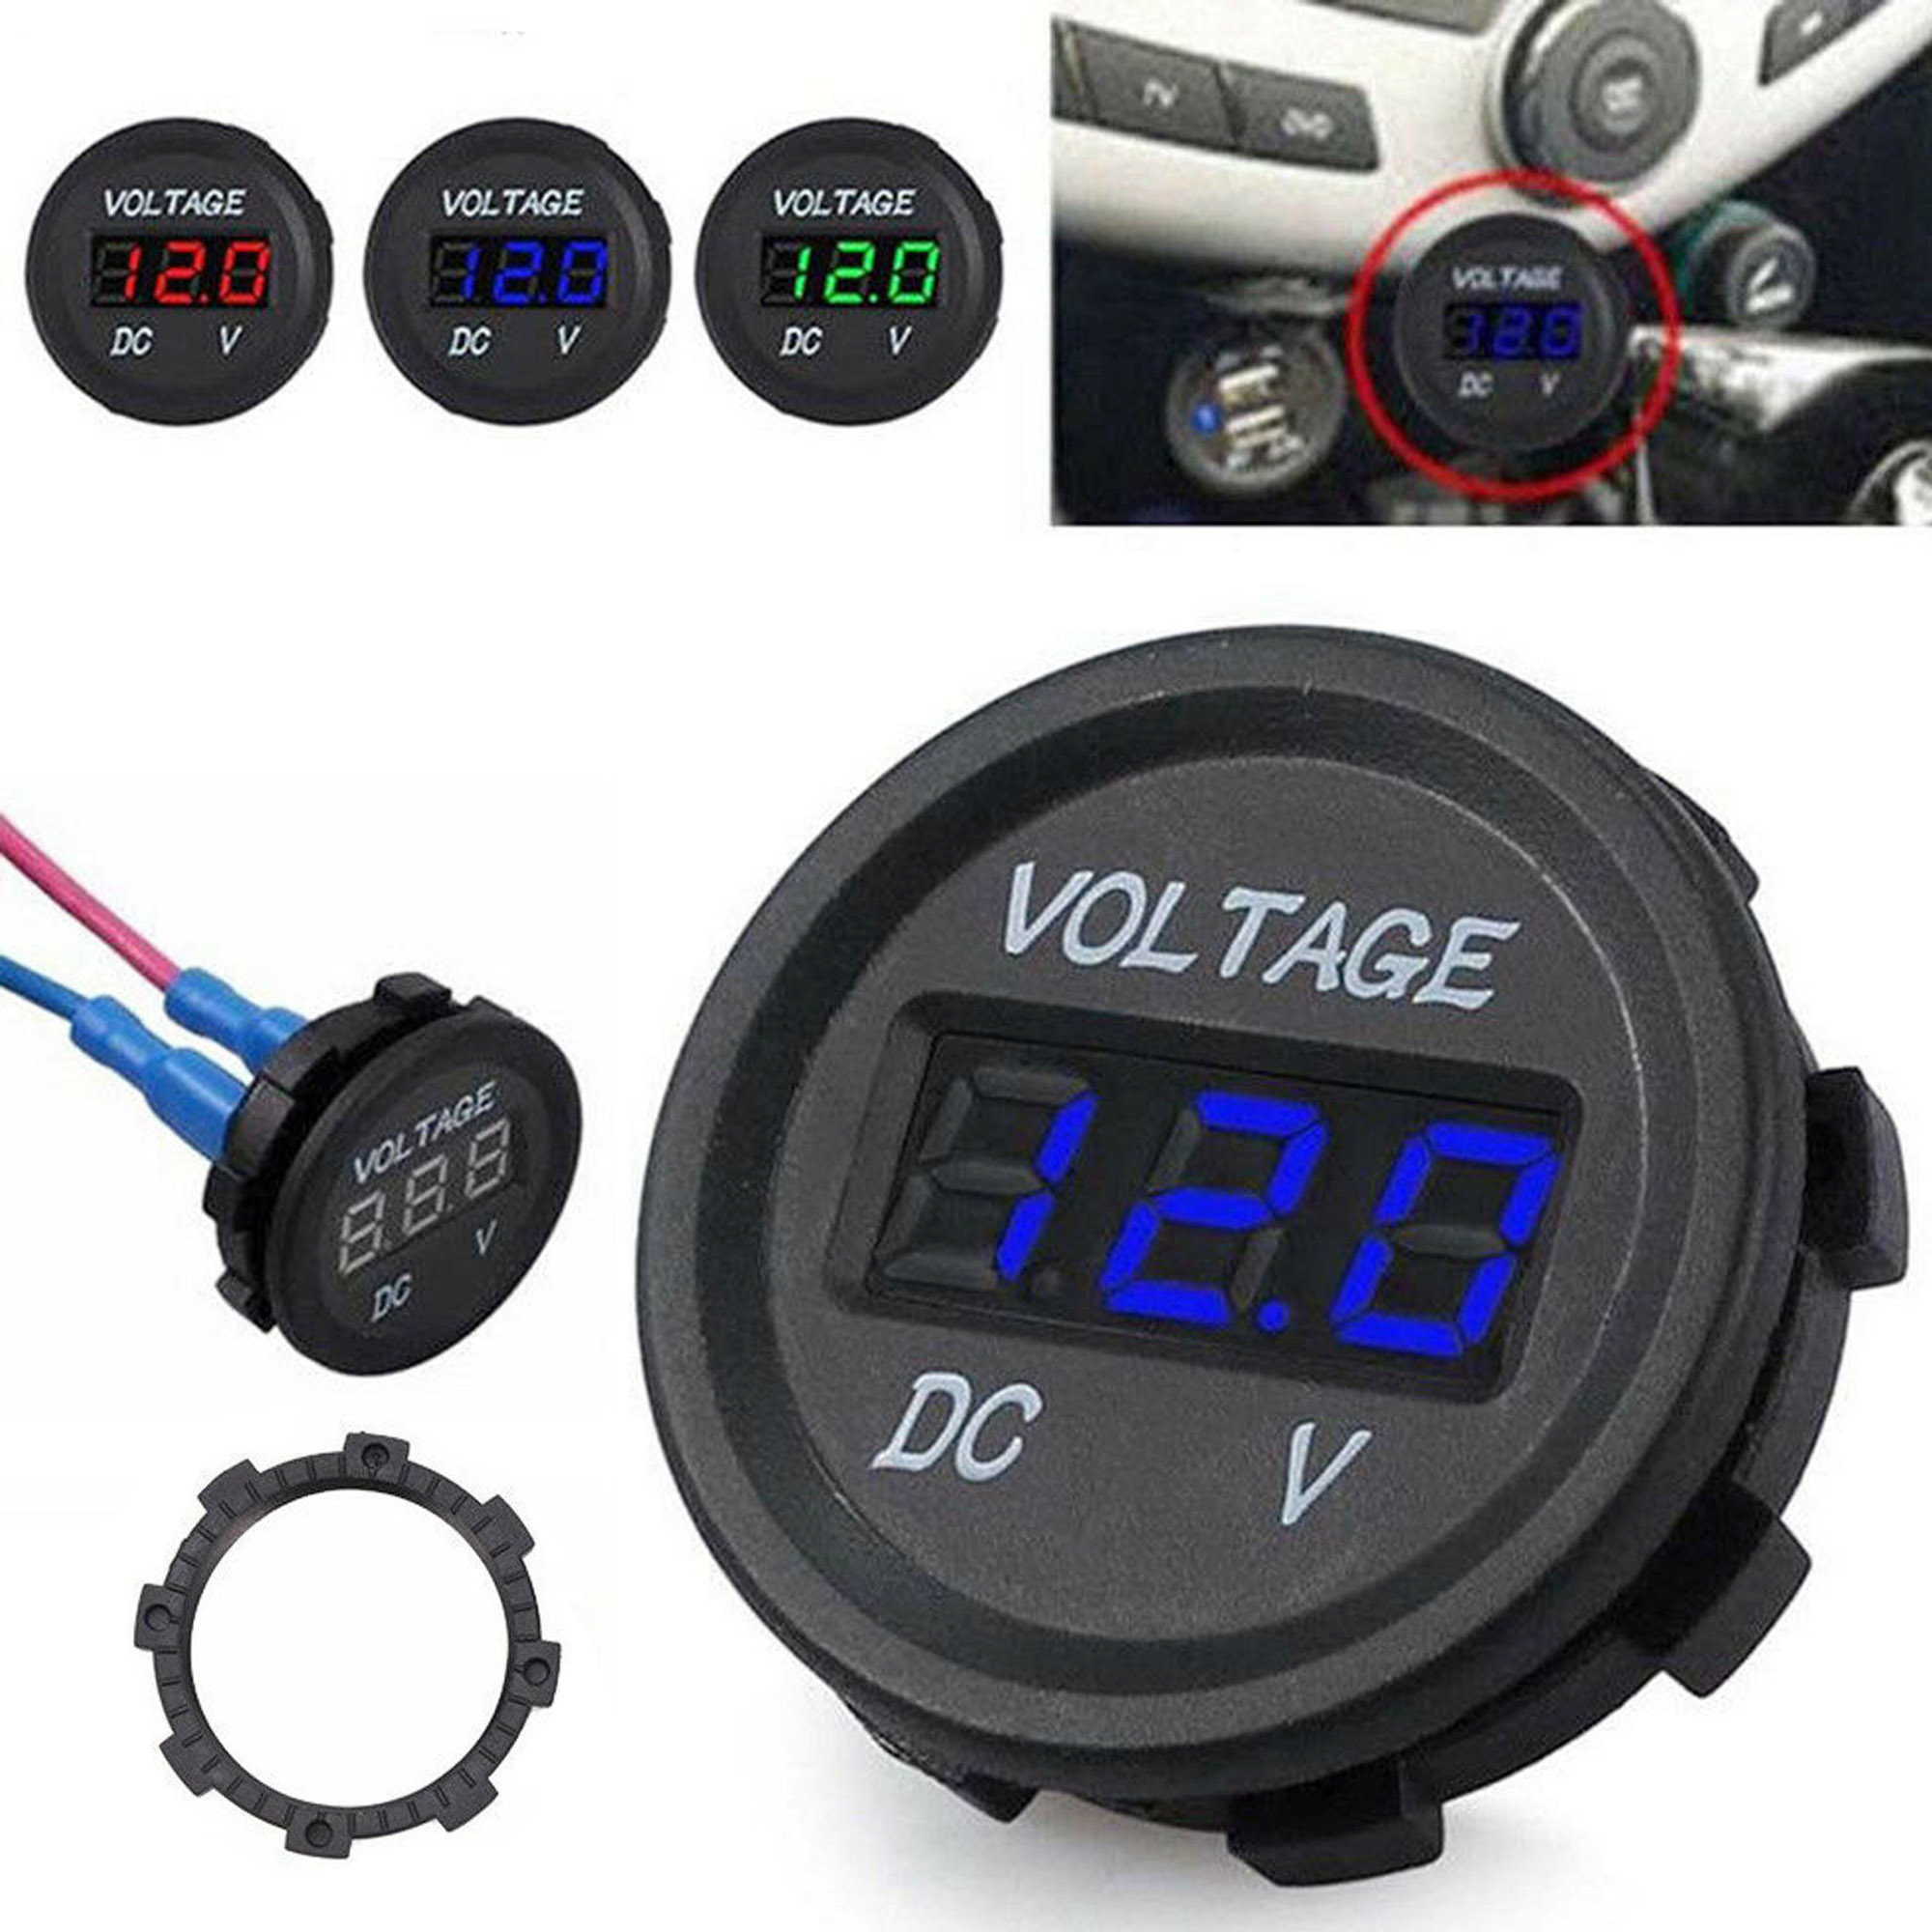 12-24V Digital LED Panel DC Voltmeter Voltage Meter Gauge Display Car Motor Boat